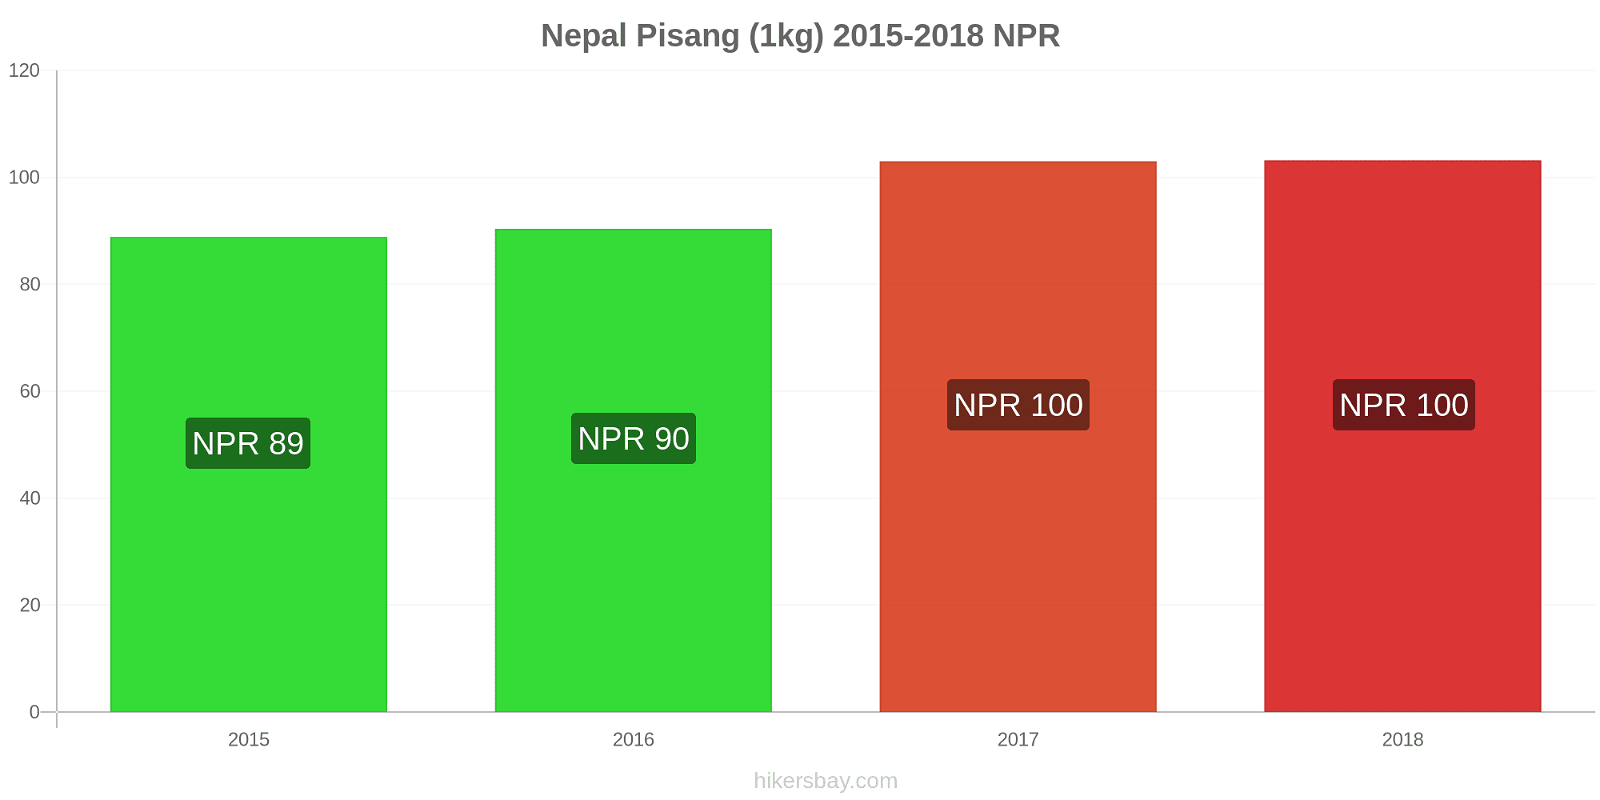 Nepal perubahan harga Pisang (1kg) hikersbay.com